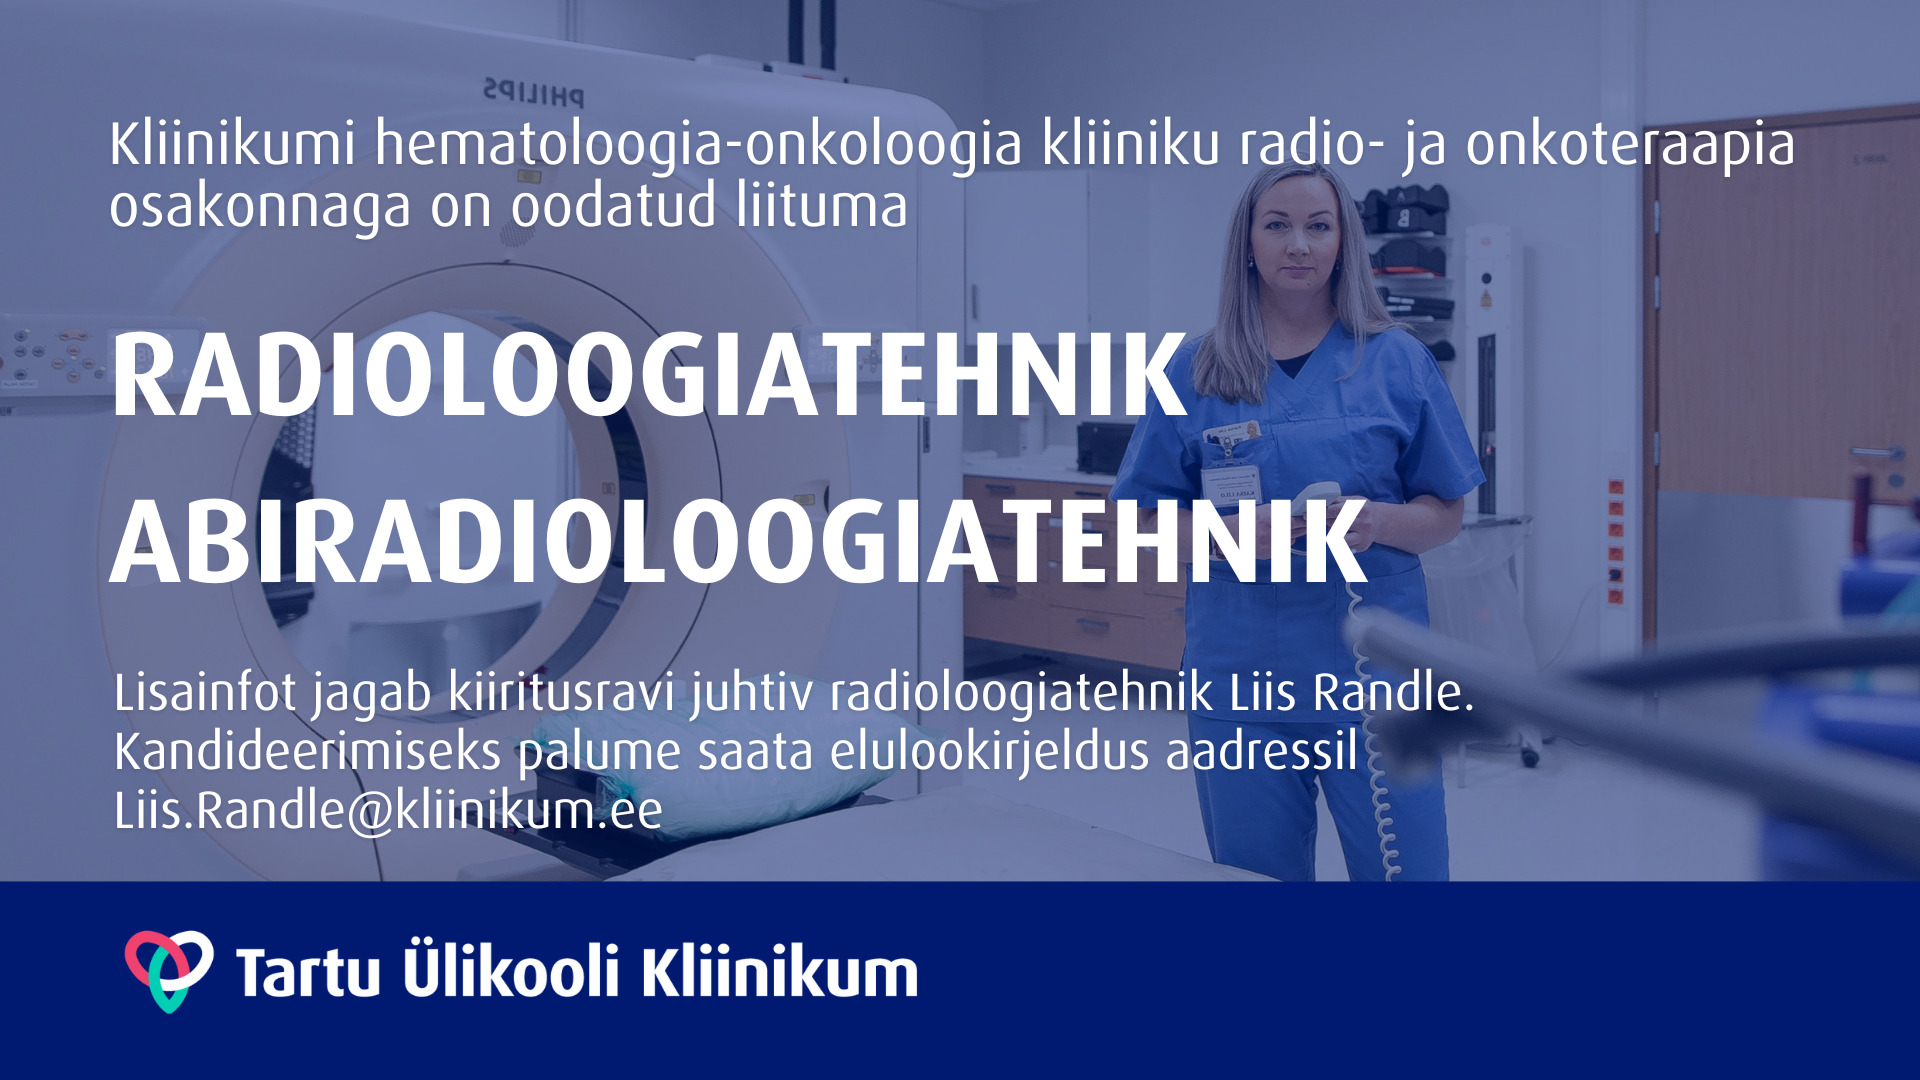 Radioloogiatehnik/ abiradioloogiatehnik radio- ja onkoteraapia osakonda -  Tartu Ülikooli Kliinikum